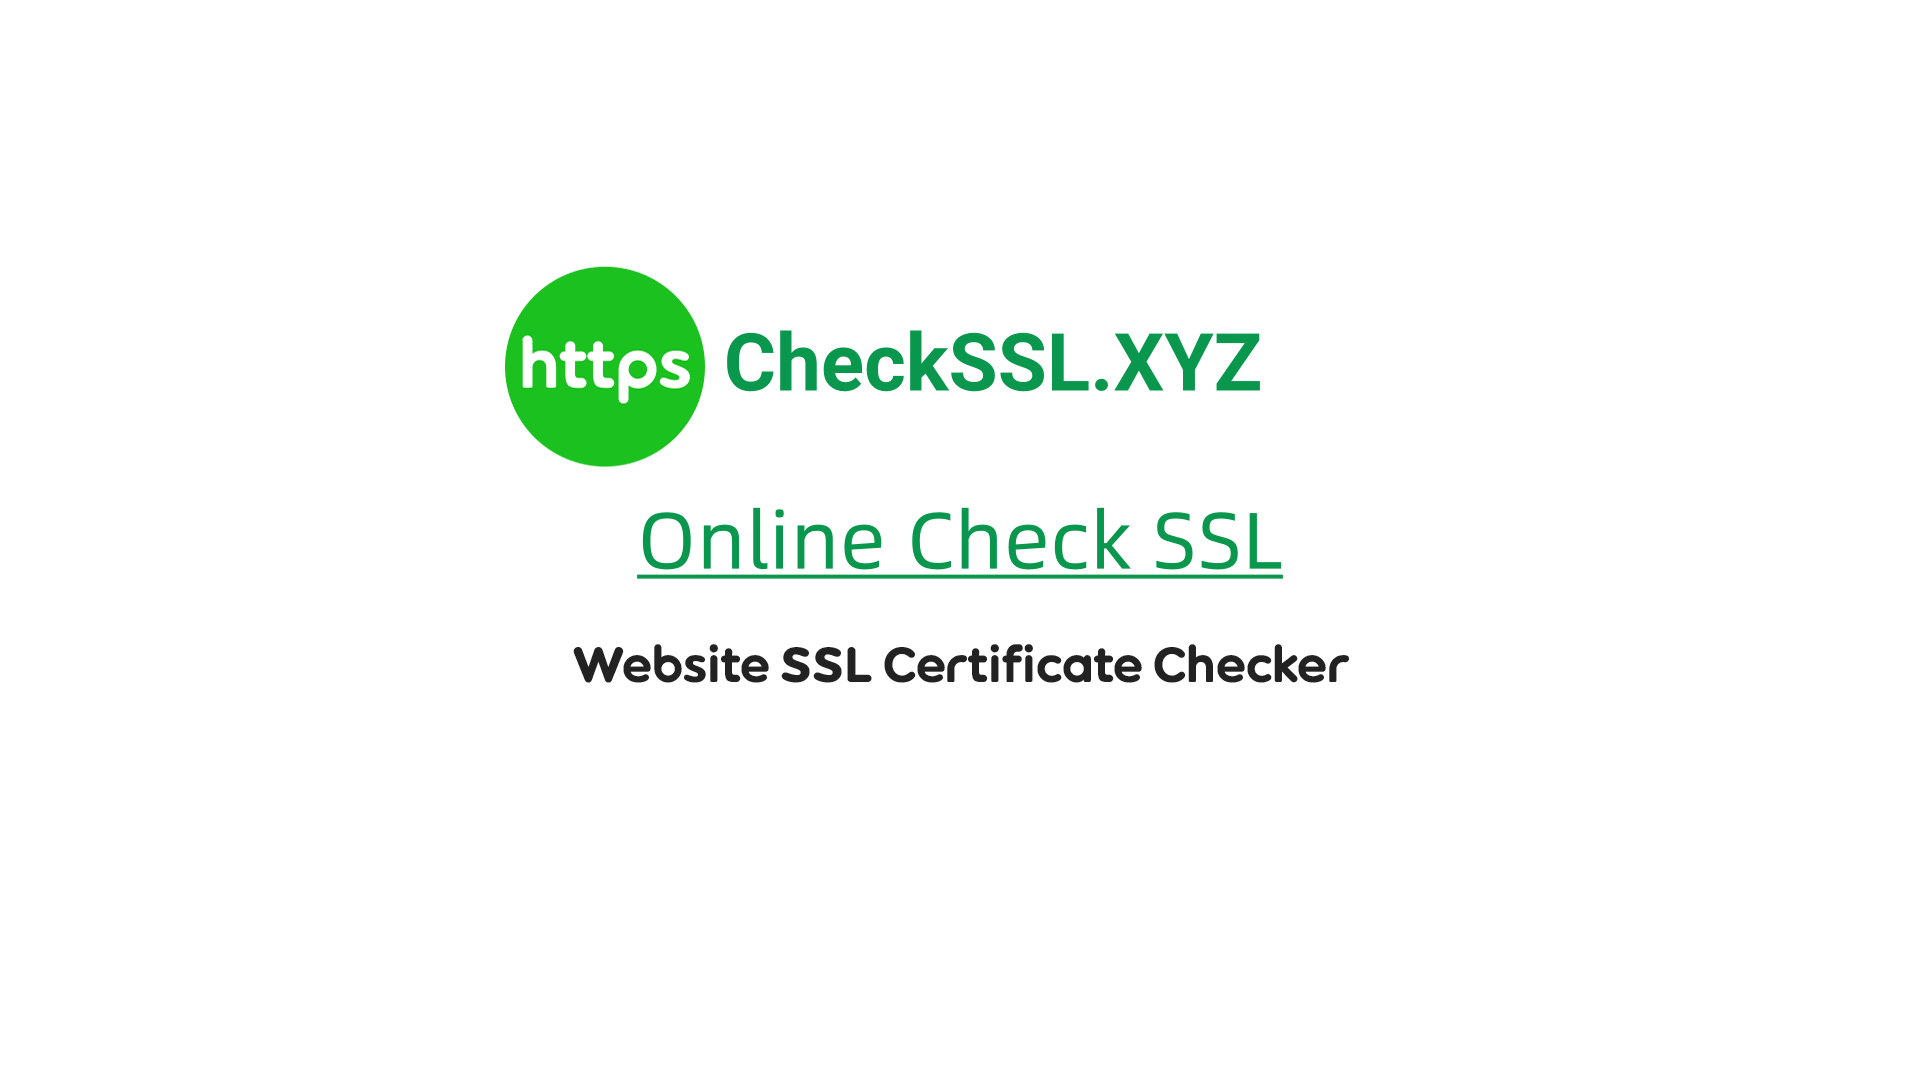 About CheckSSL